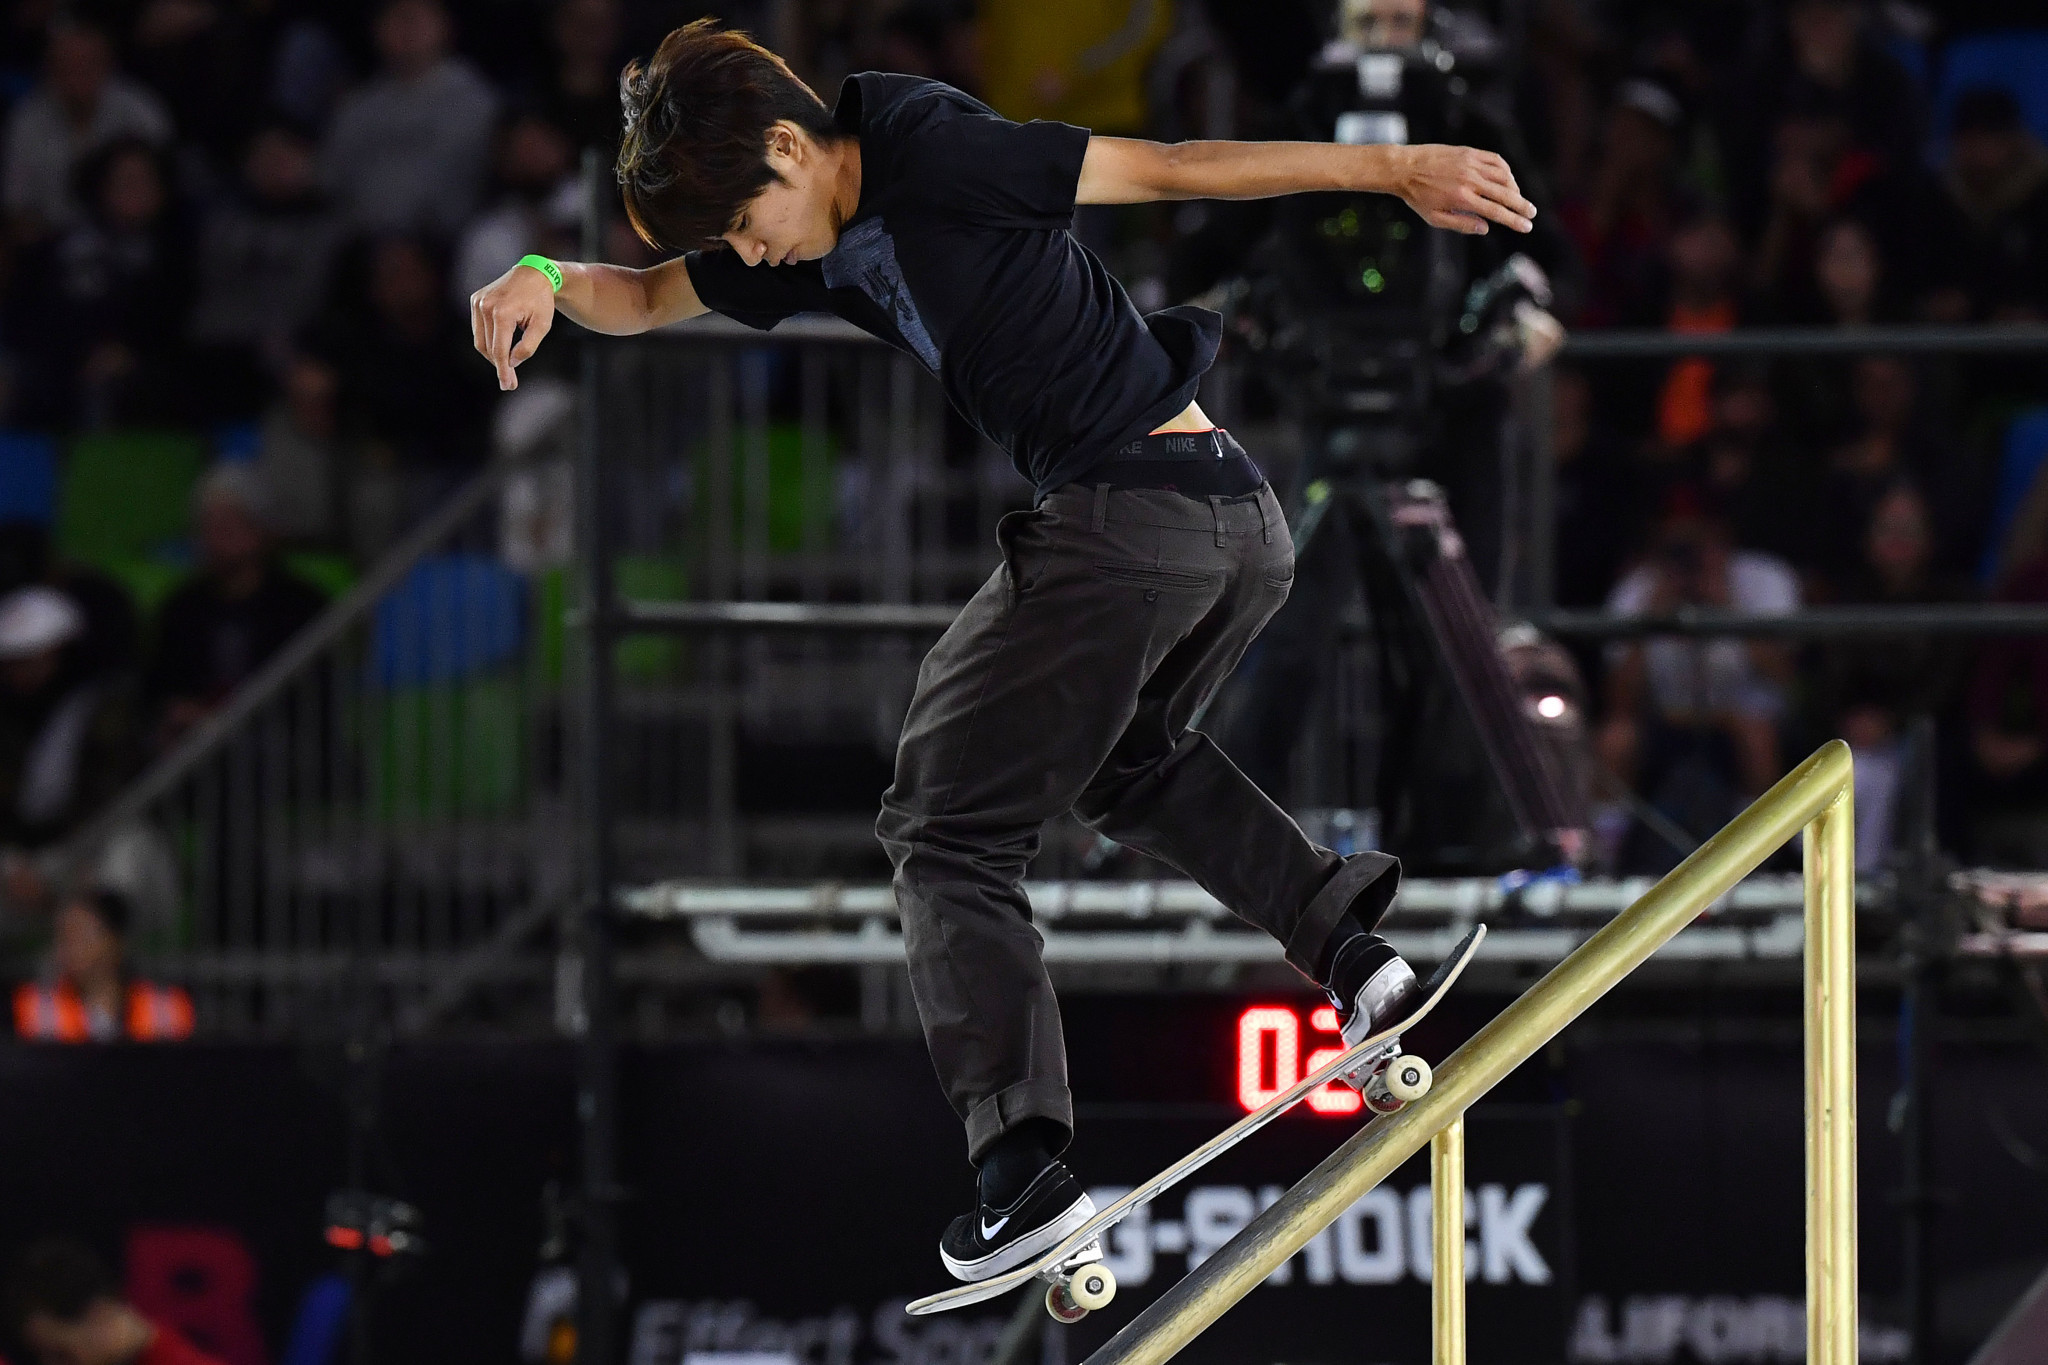 World Skate s'apprête à relancer la qualification olympique de skateboard © Getty Images